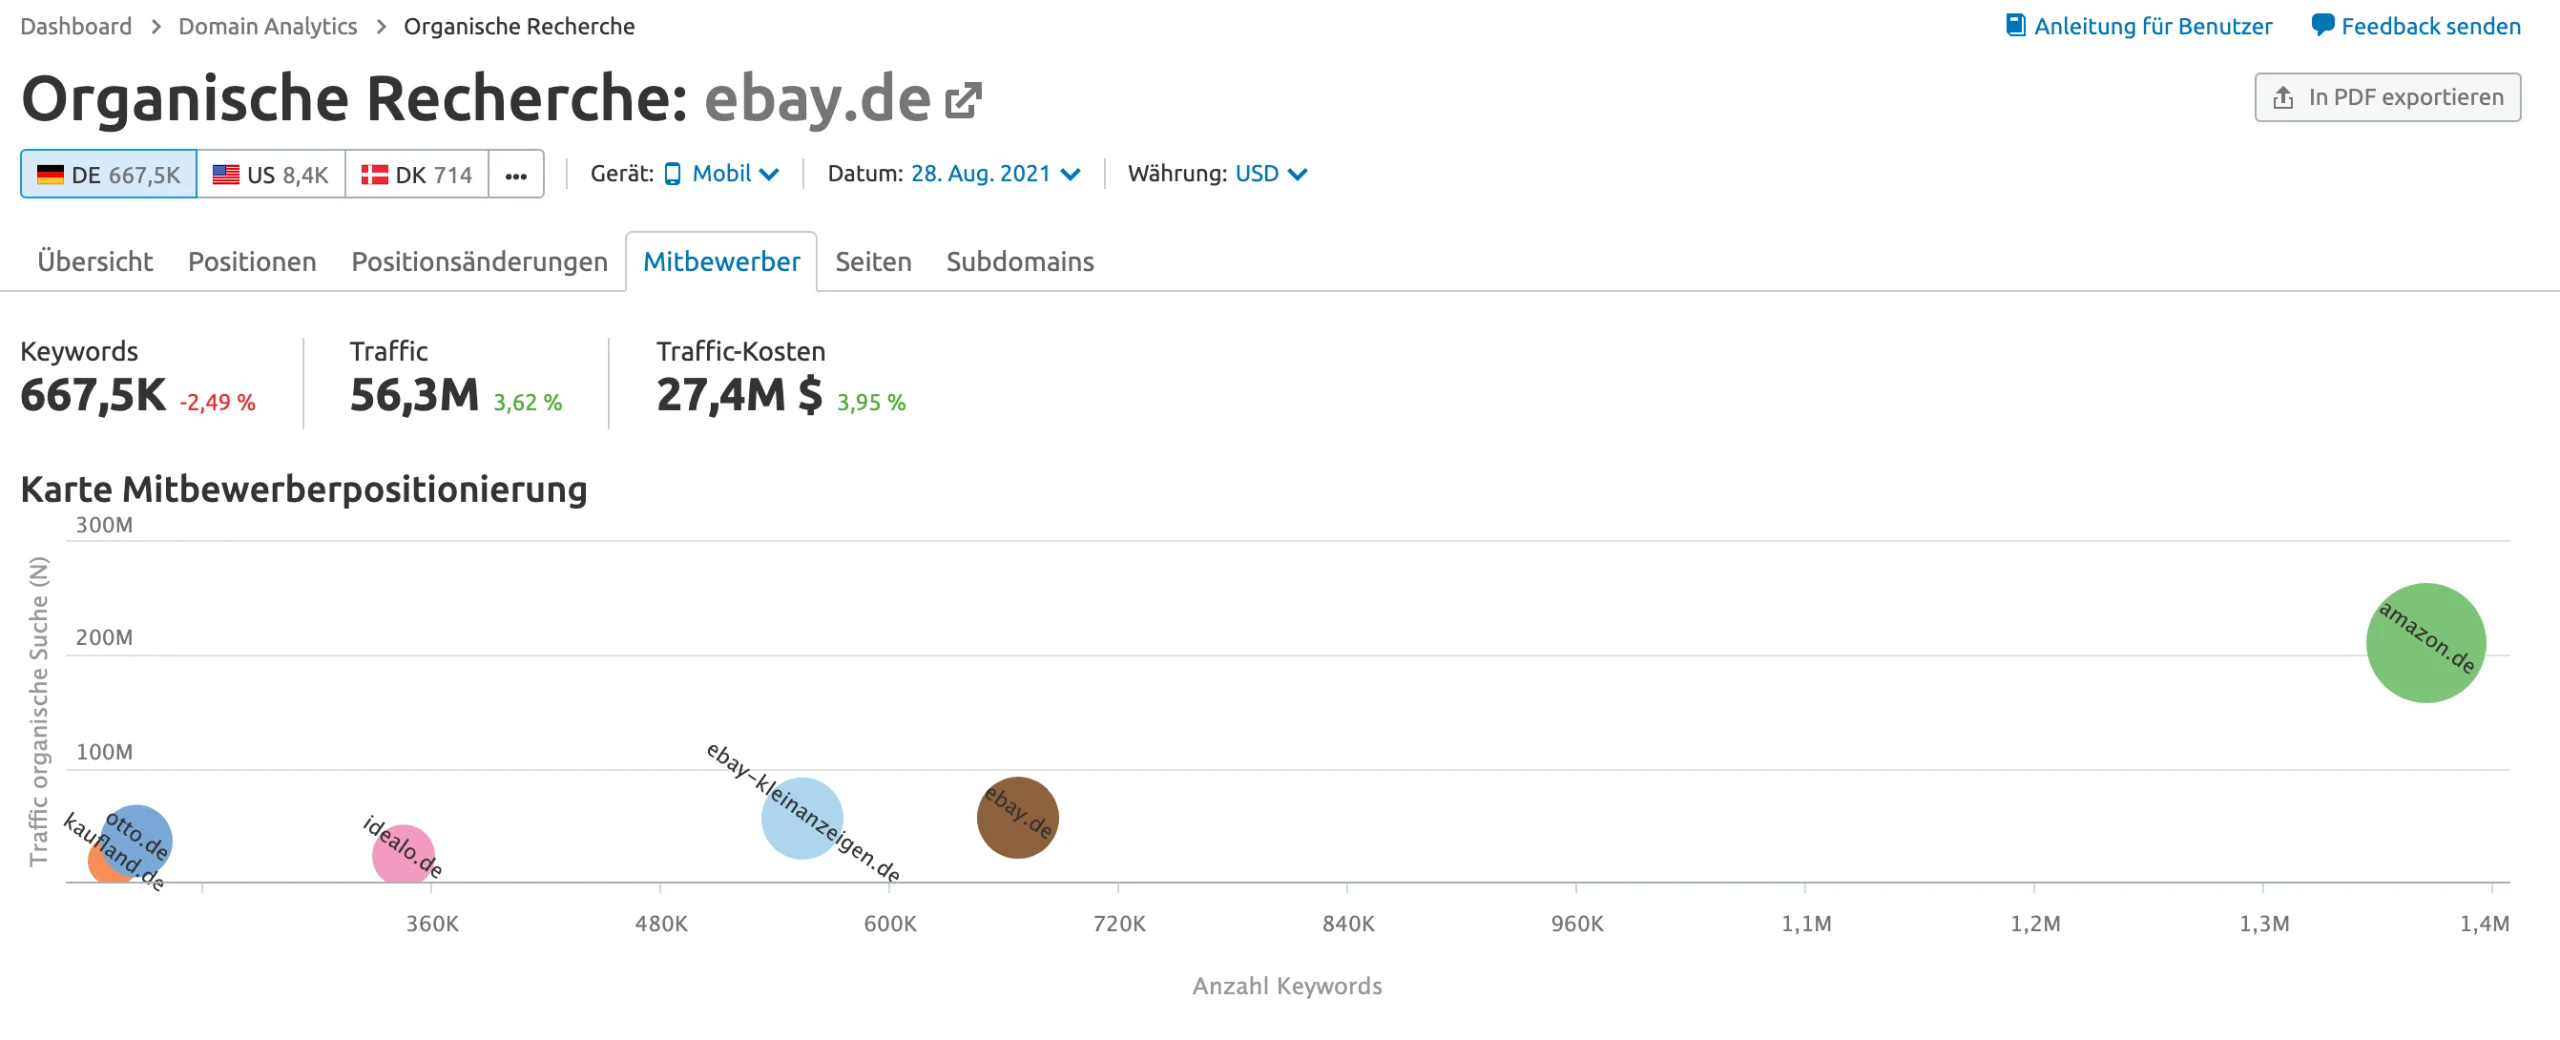 Organische Recherche am Beispiel ebay.de im Vergleich mit Konkurrenz